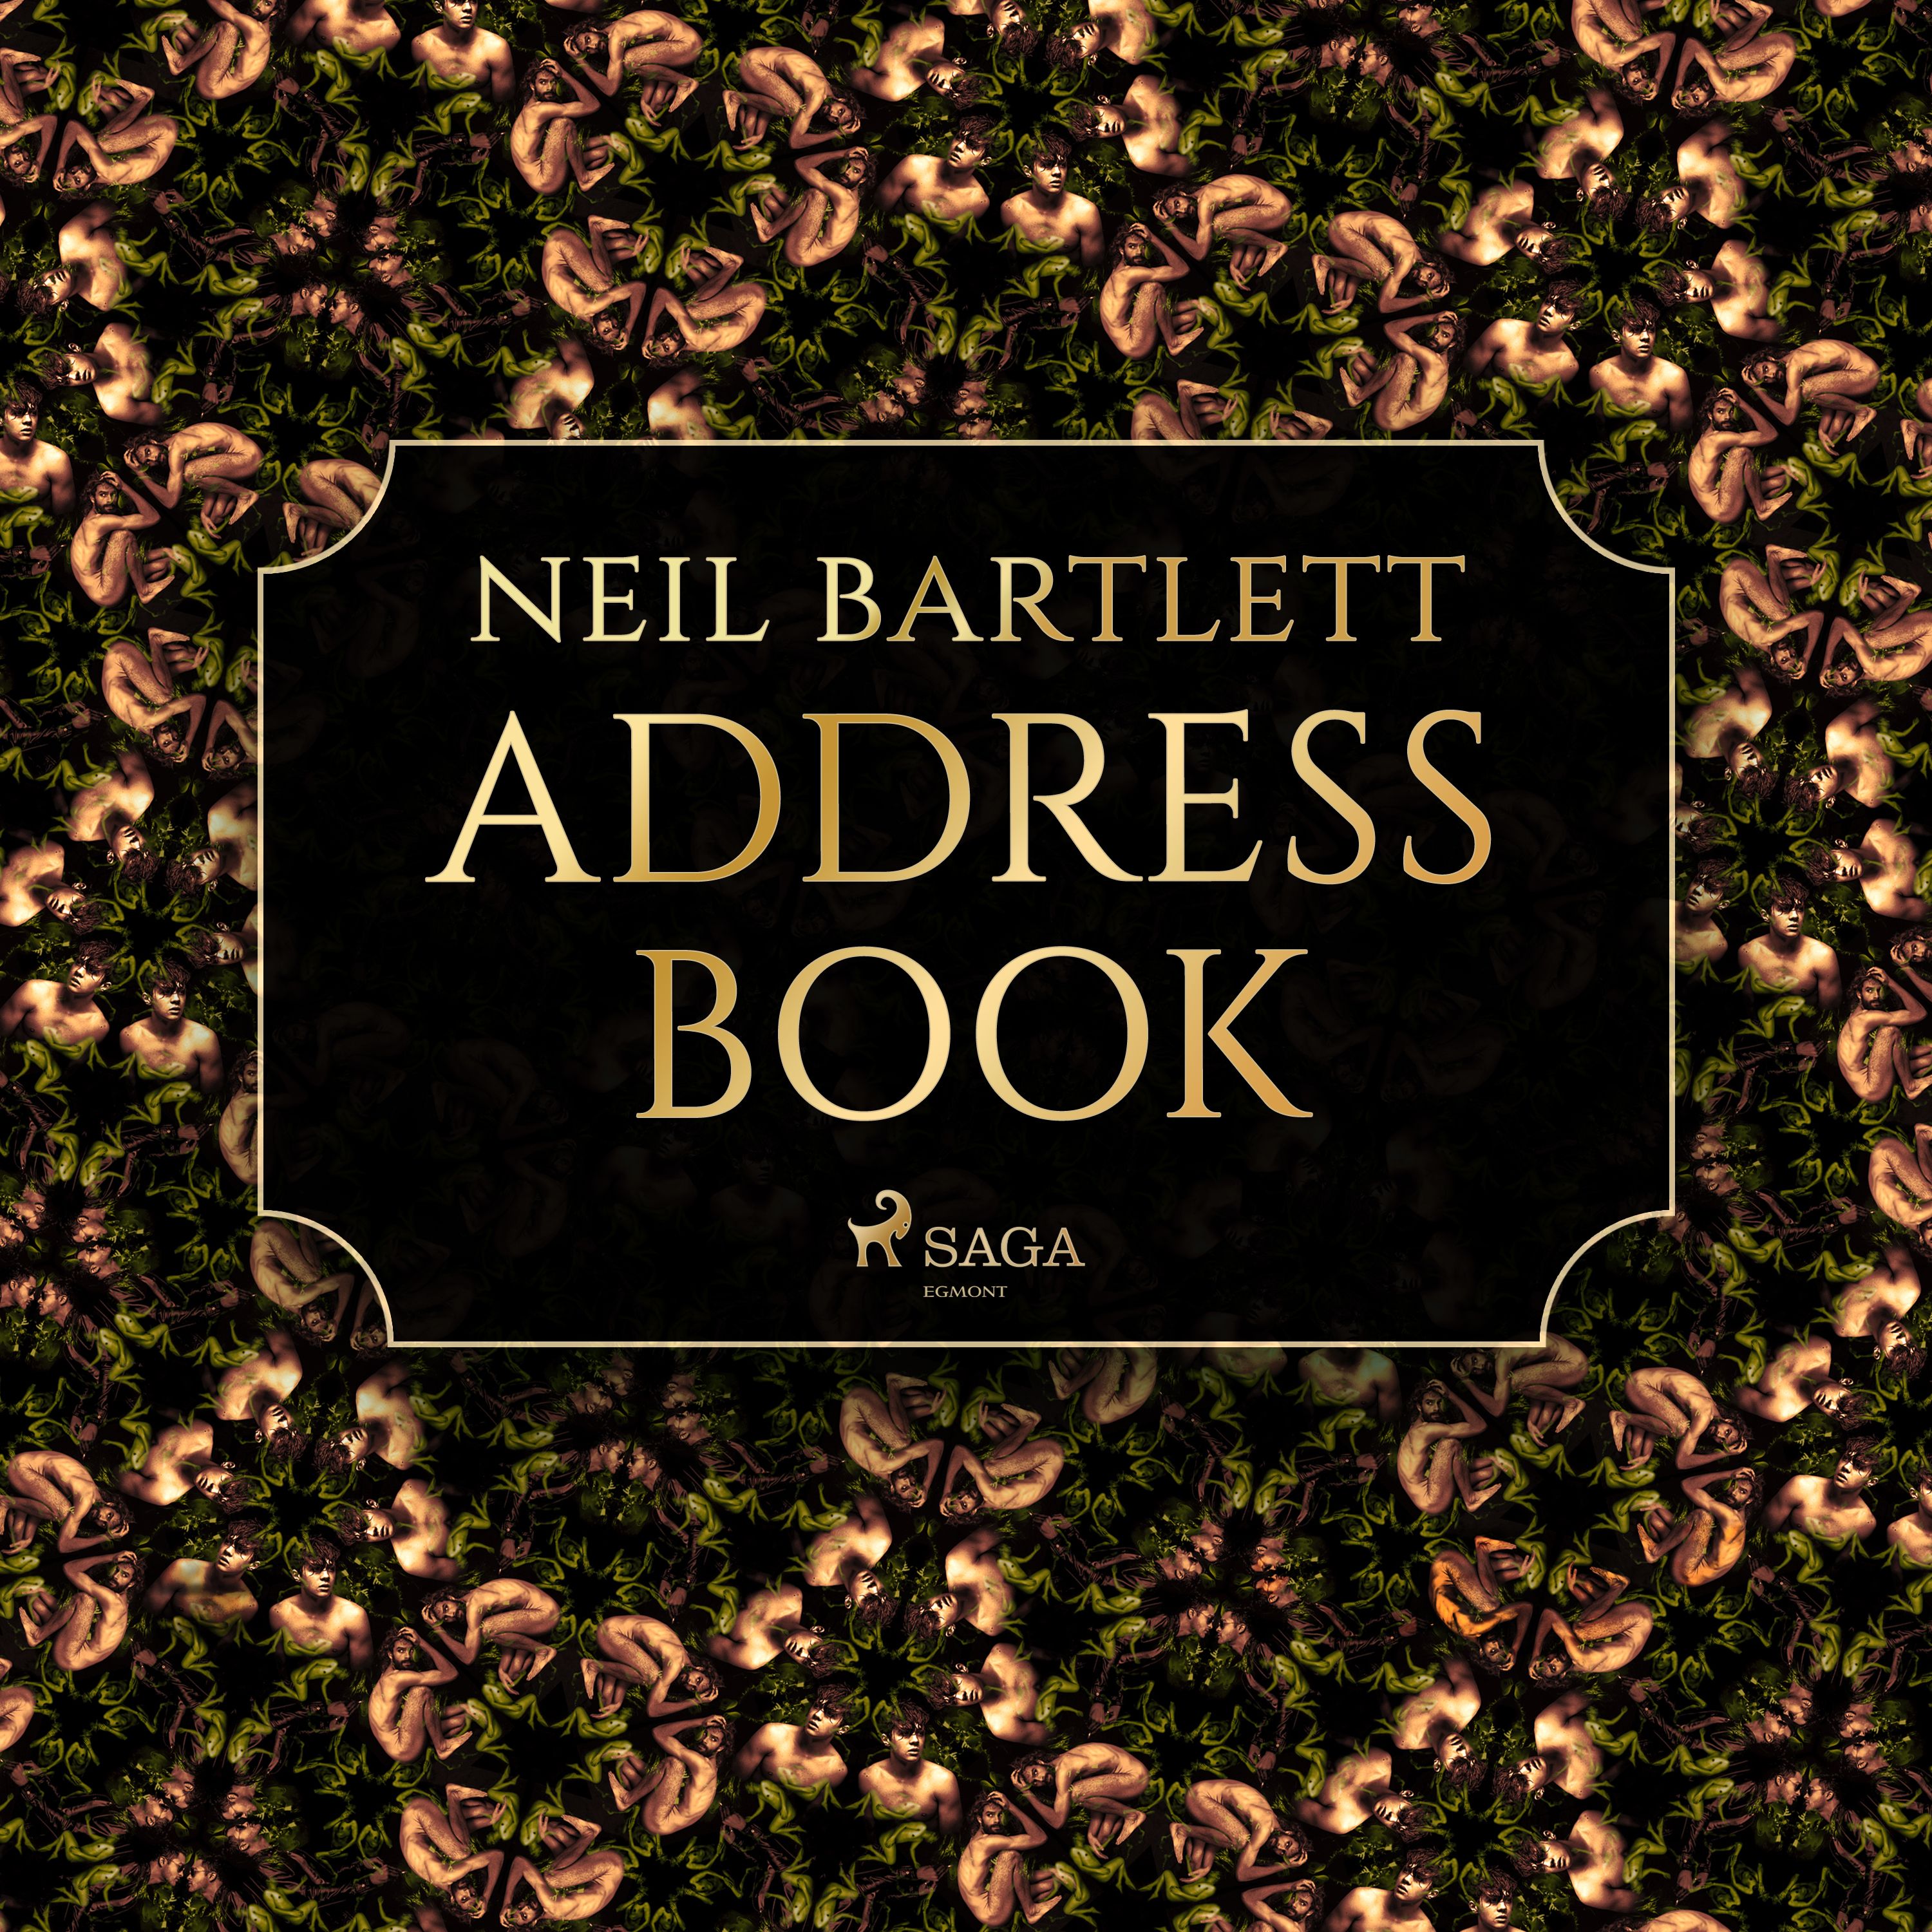 Address Book, lydbog af Neil Bartlett